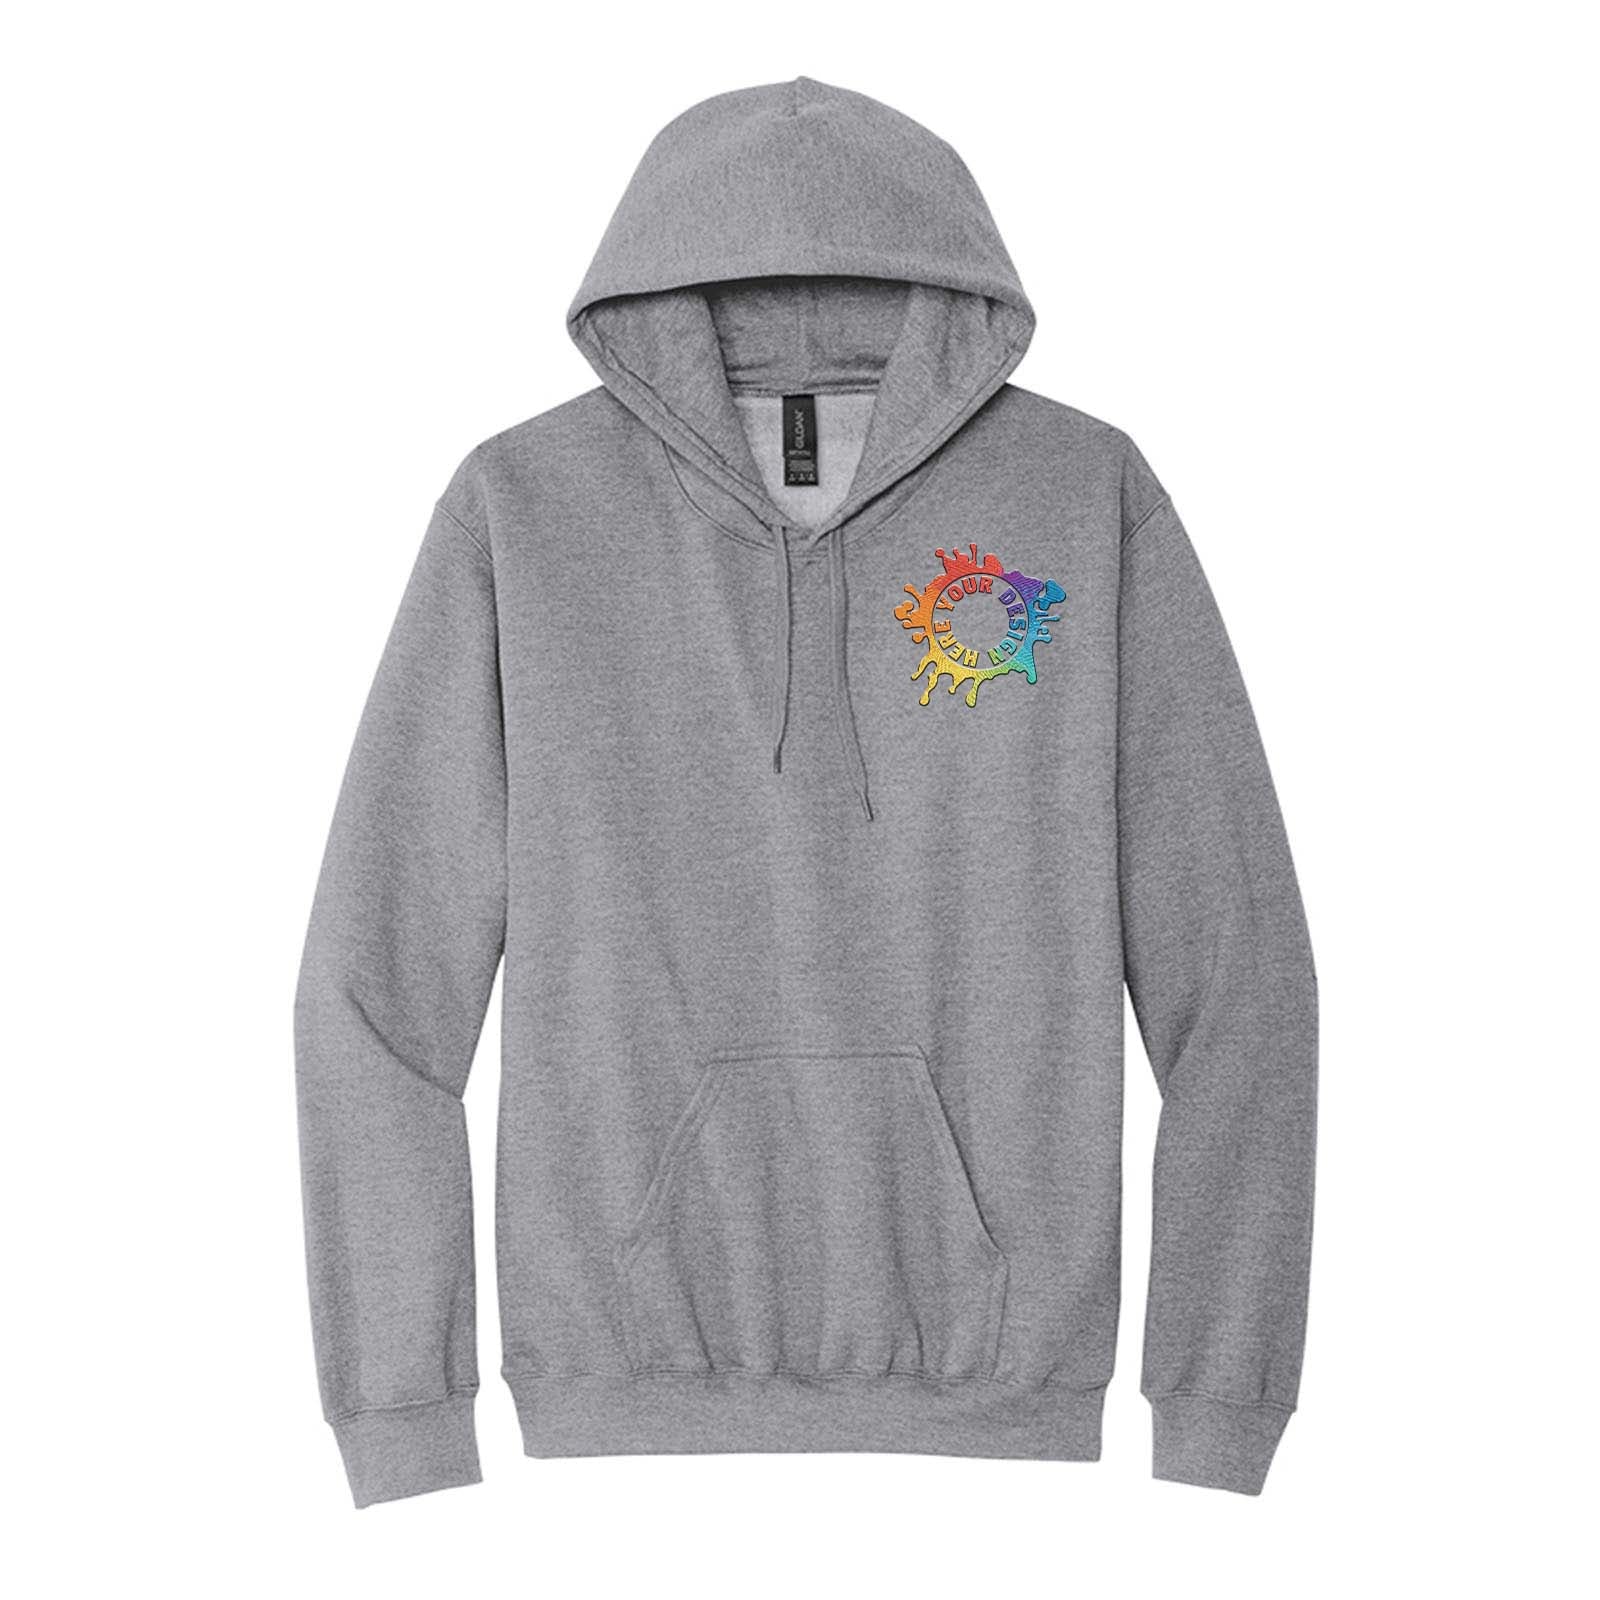 Gildan Softstyle Hooded Sweatshirt Embroidery - Mato & Hash